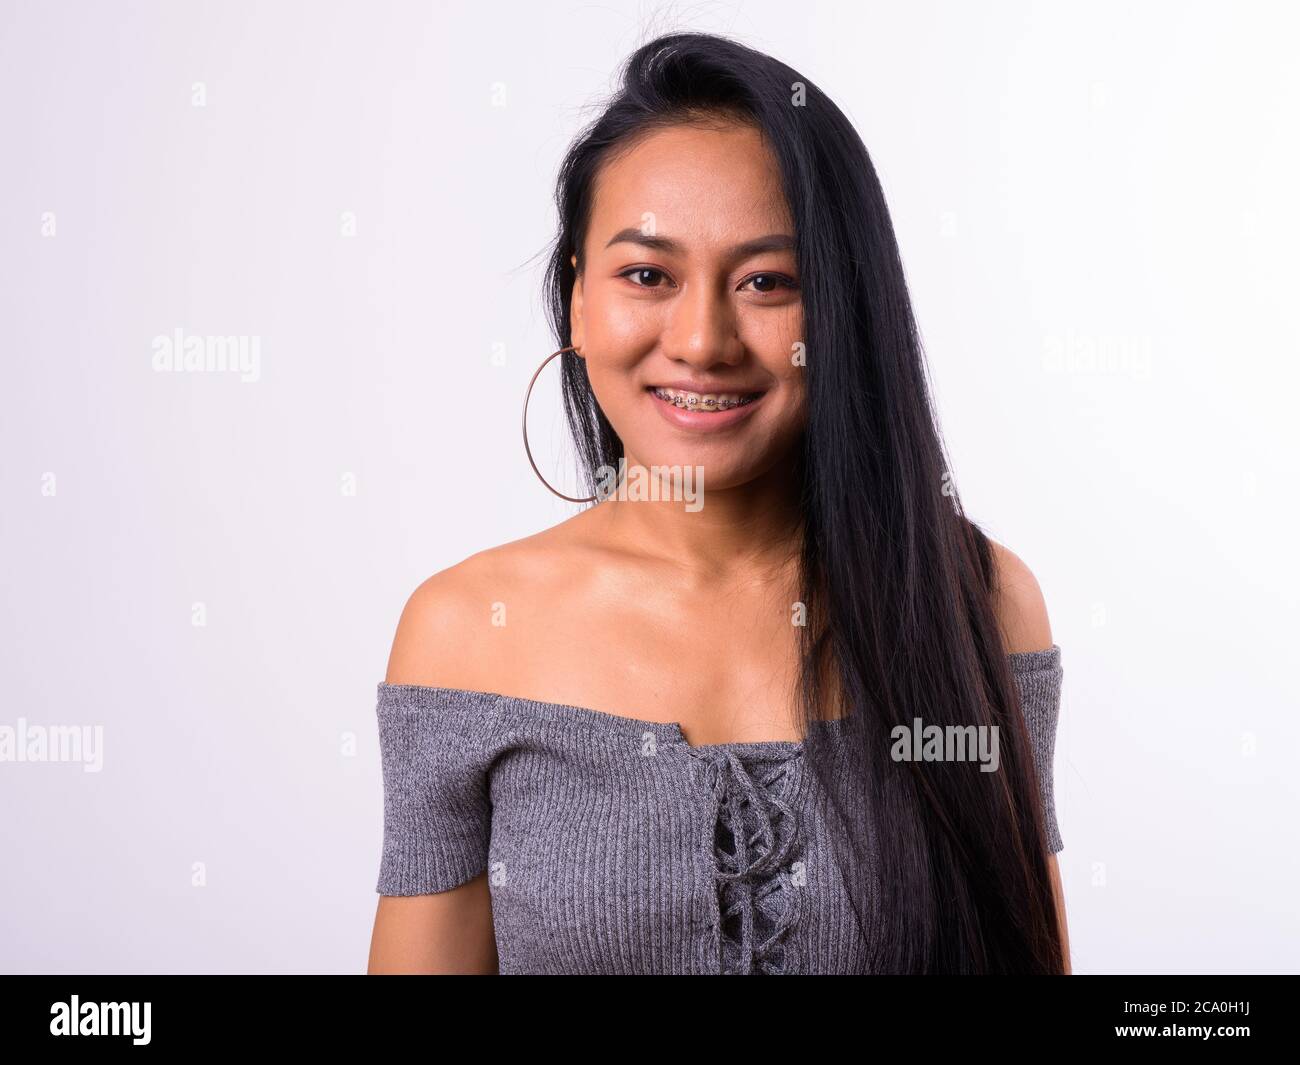 Portrait de jeune heureuse belle femme asiatique avec bretelles Banque D'Images